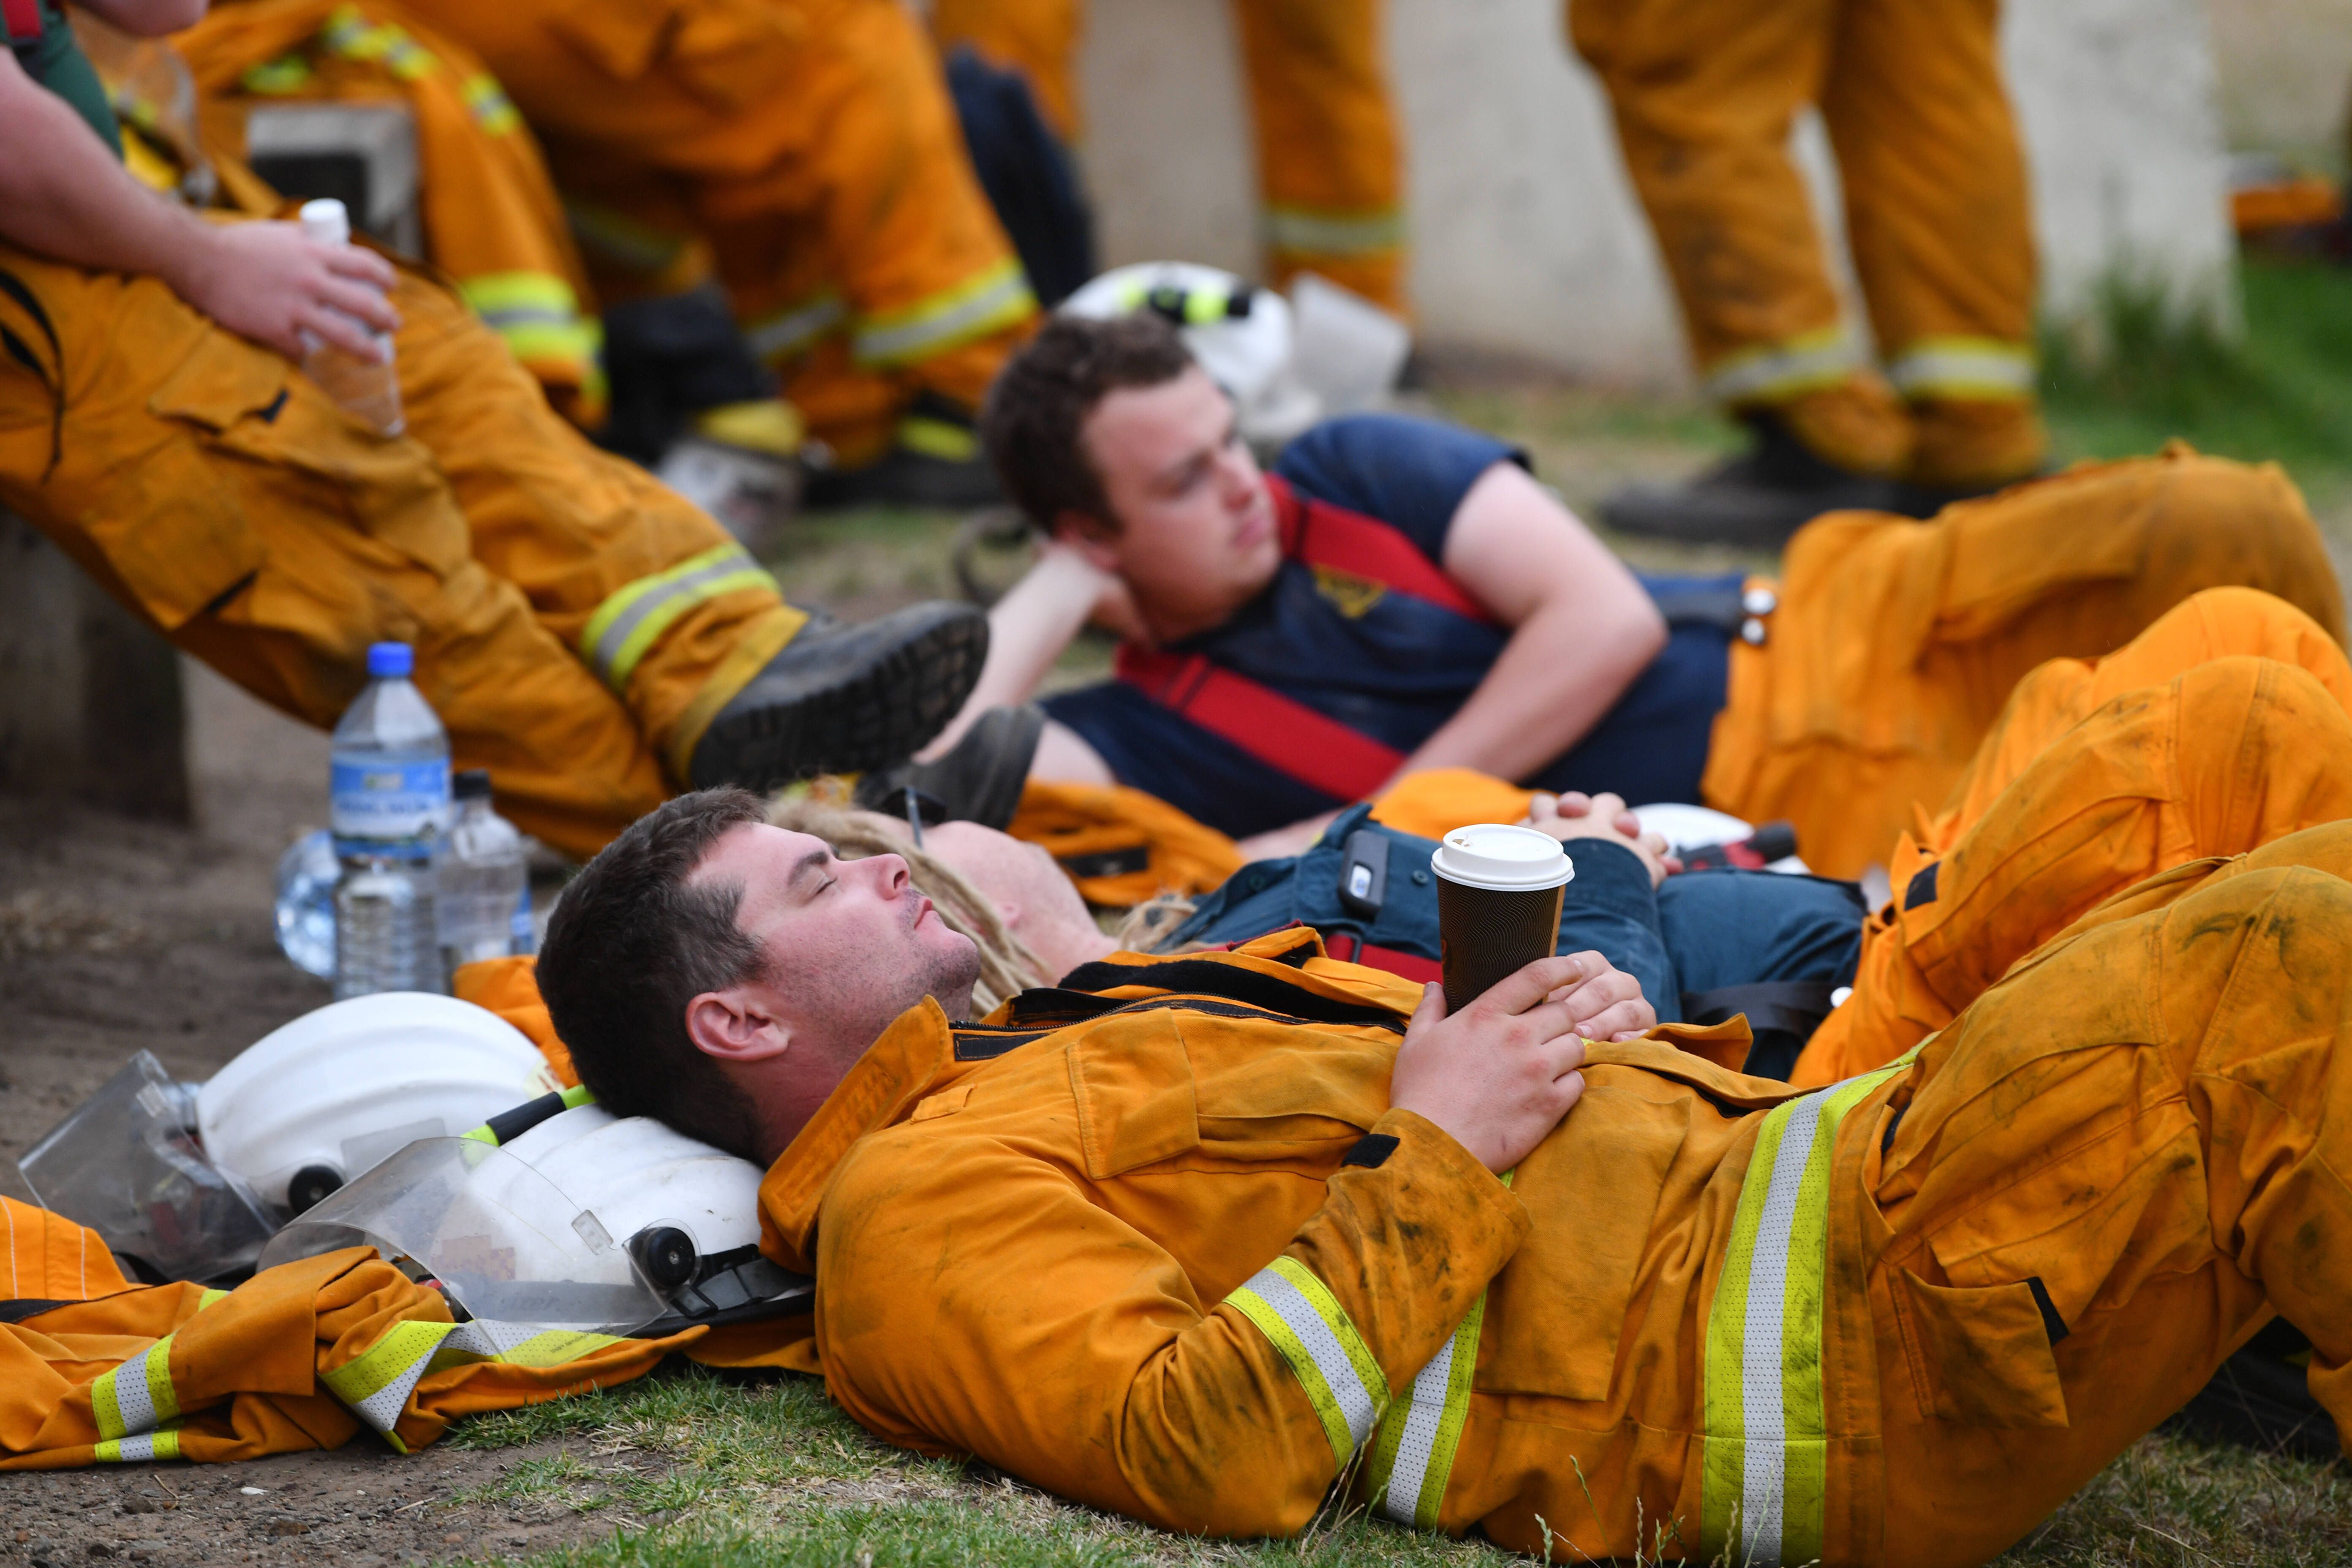 Bilder zeigen: Australische Feuerwehrleute sind am Ende ihrer Kräfte